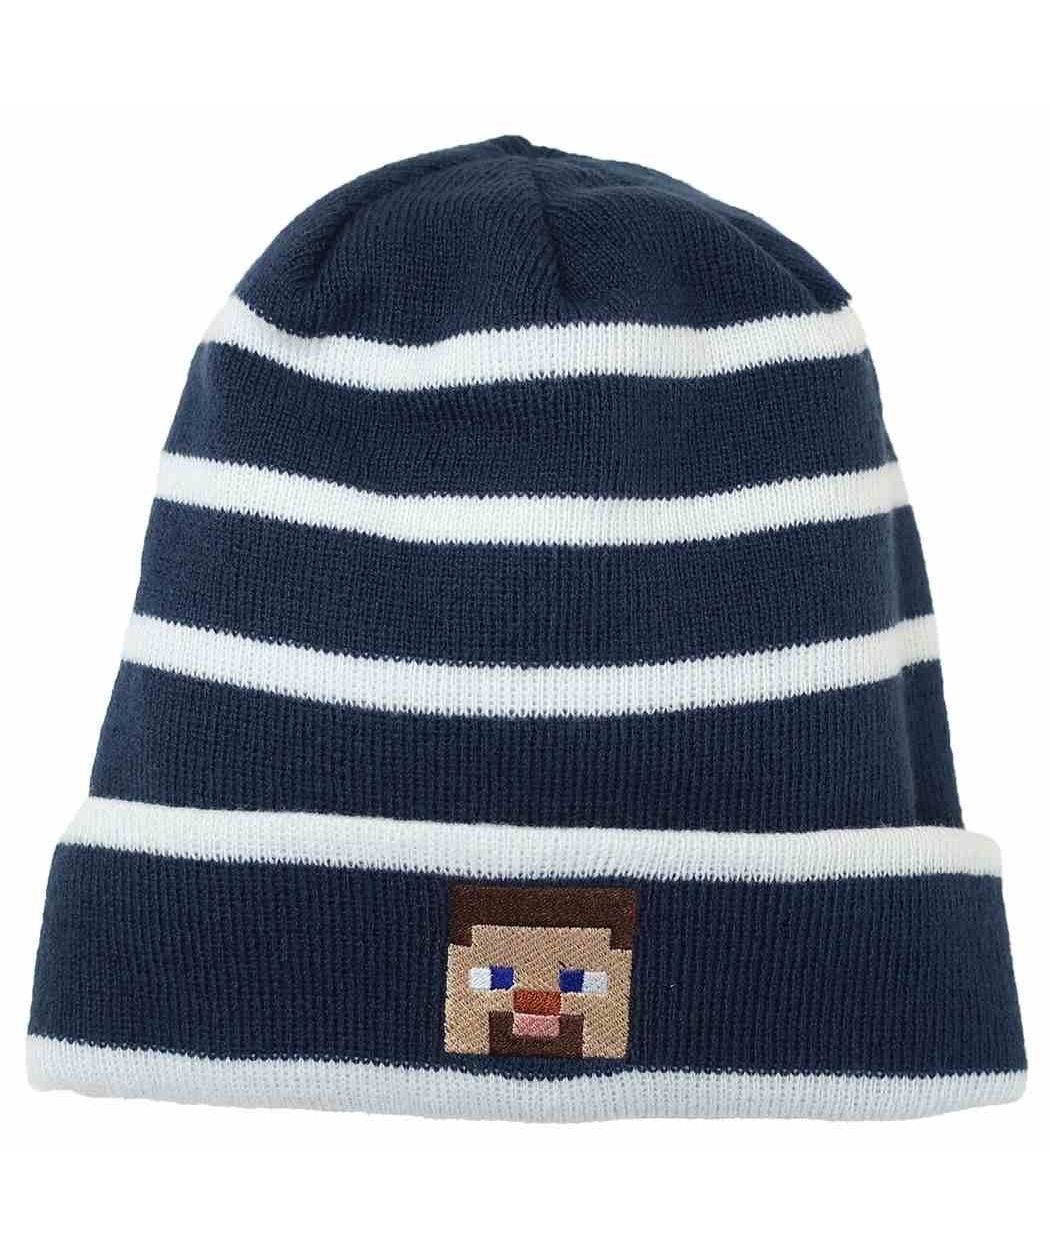 マインクラフト 帽子 KIDS ニット帽 ネイビー Minecraft カイタック